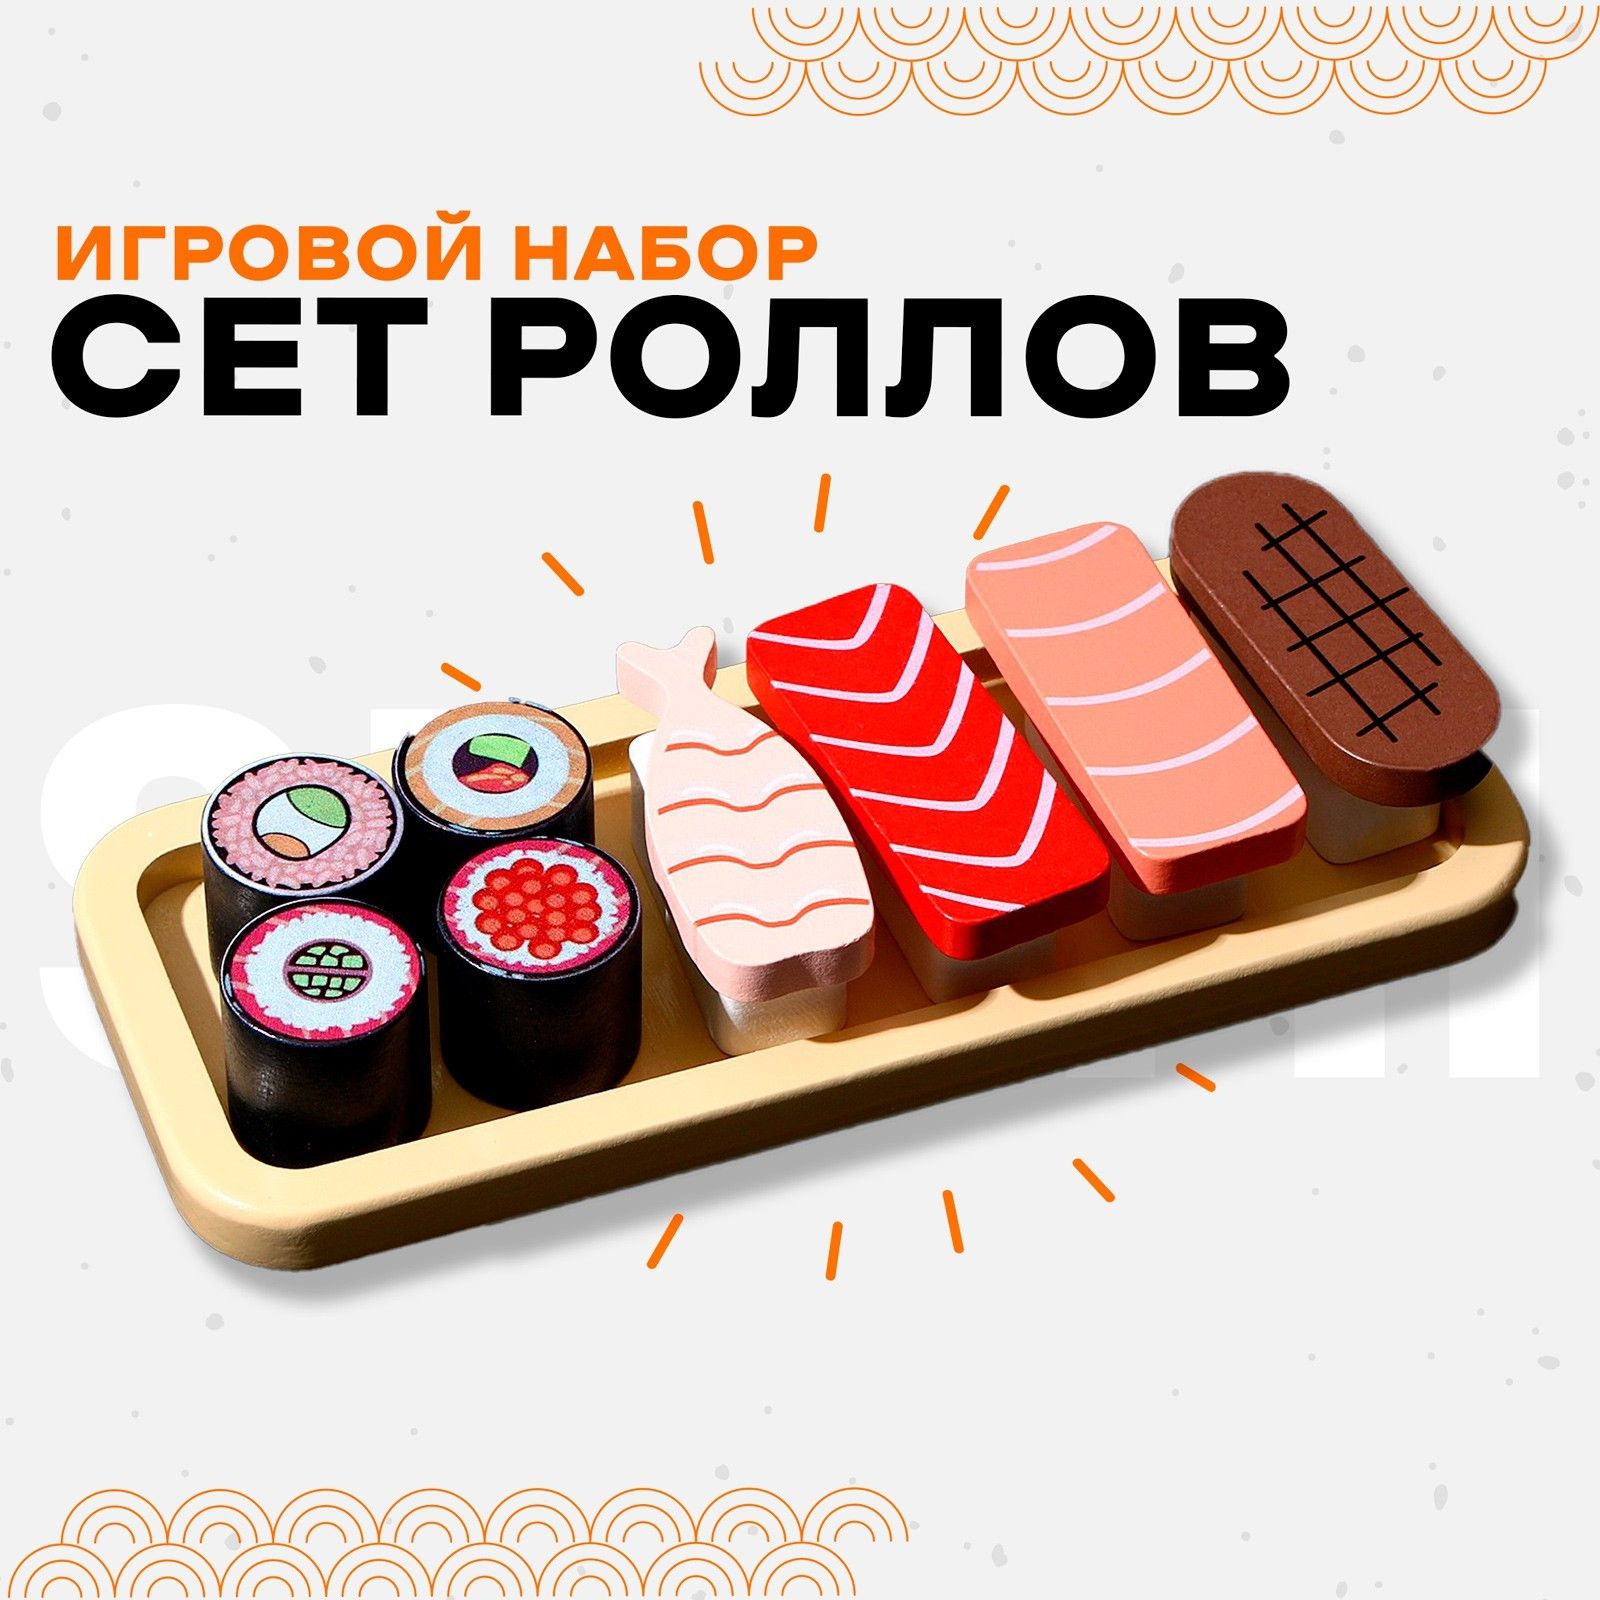 Набор суши за 1000 рублей (120) фото